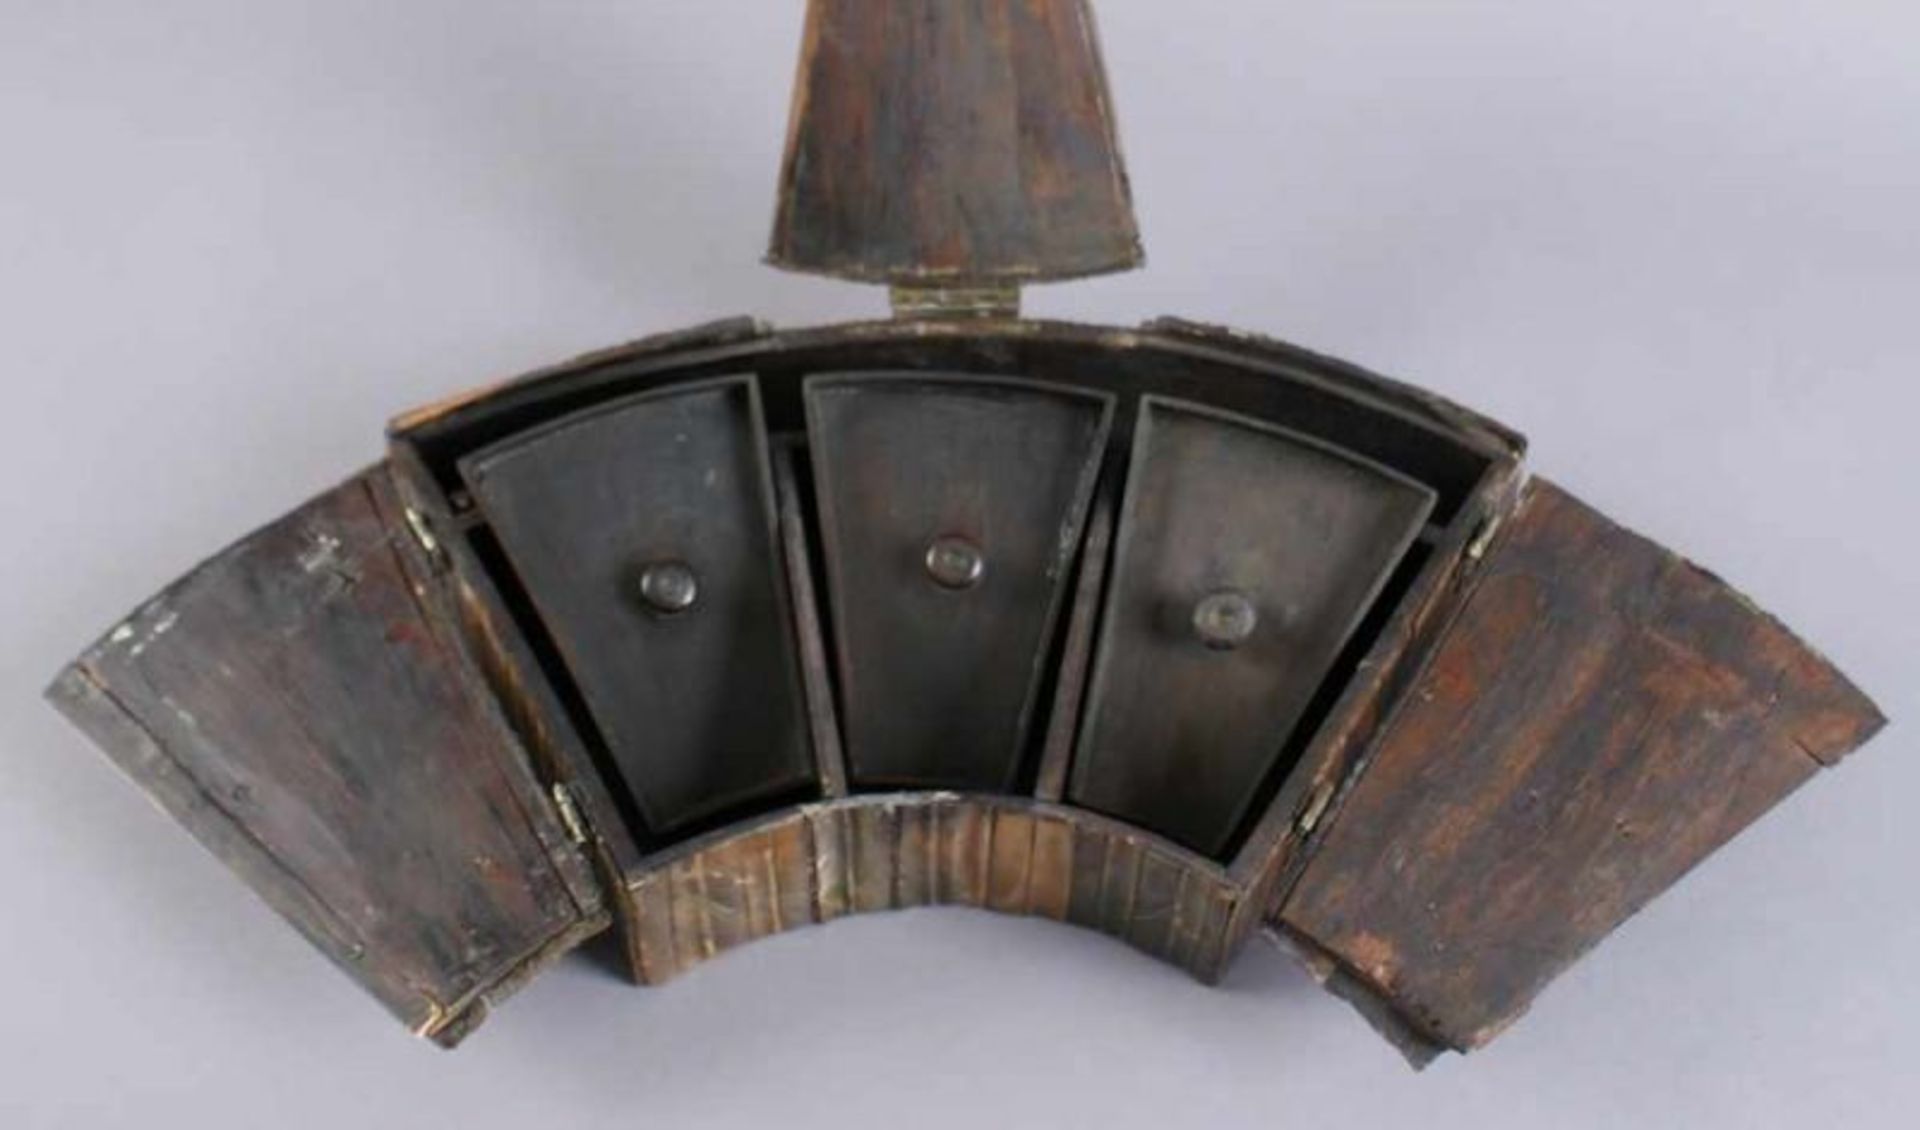 Fächerförmige Schatulle, Holzkorpus mit Walrossknochen besetzt, 17. JH, 6x33x18 cm 20.17 % buyer's - Bild 3 aus 8